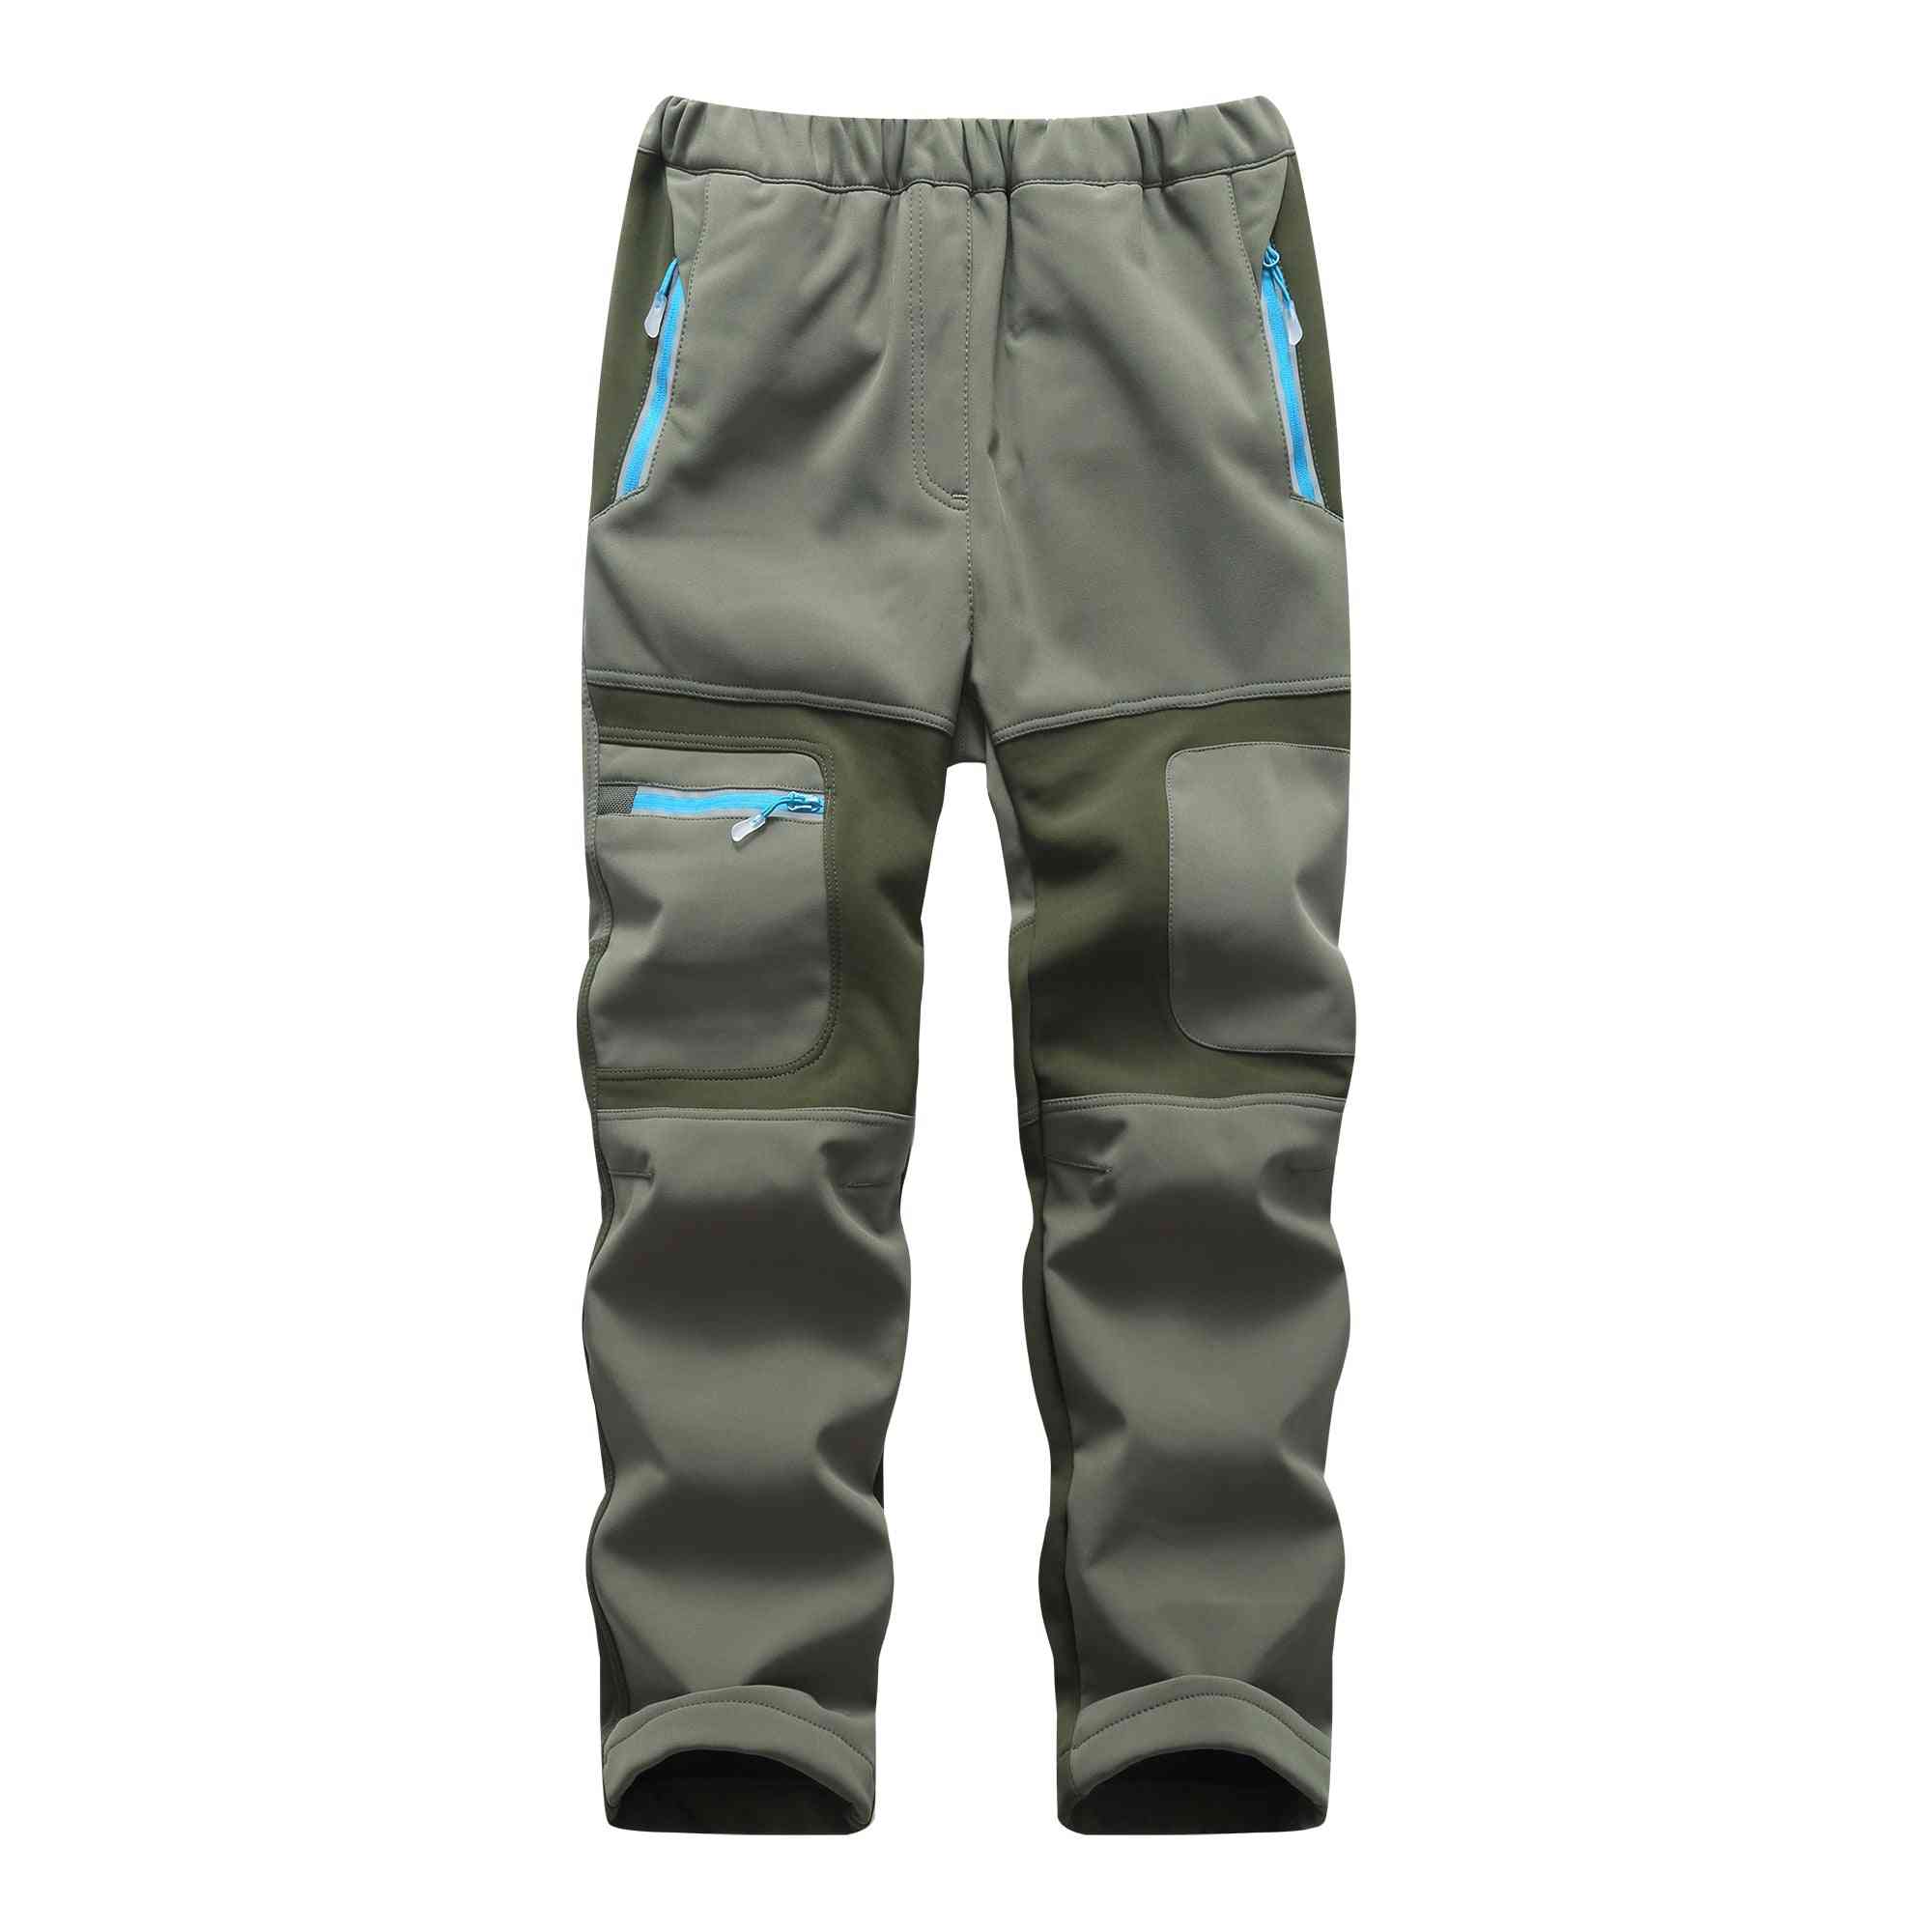 Waterproof & Pants, Warm Sport Climbing Trousers